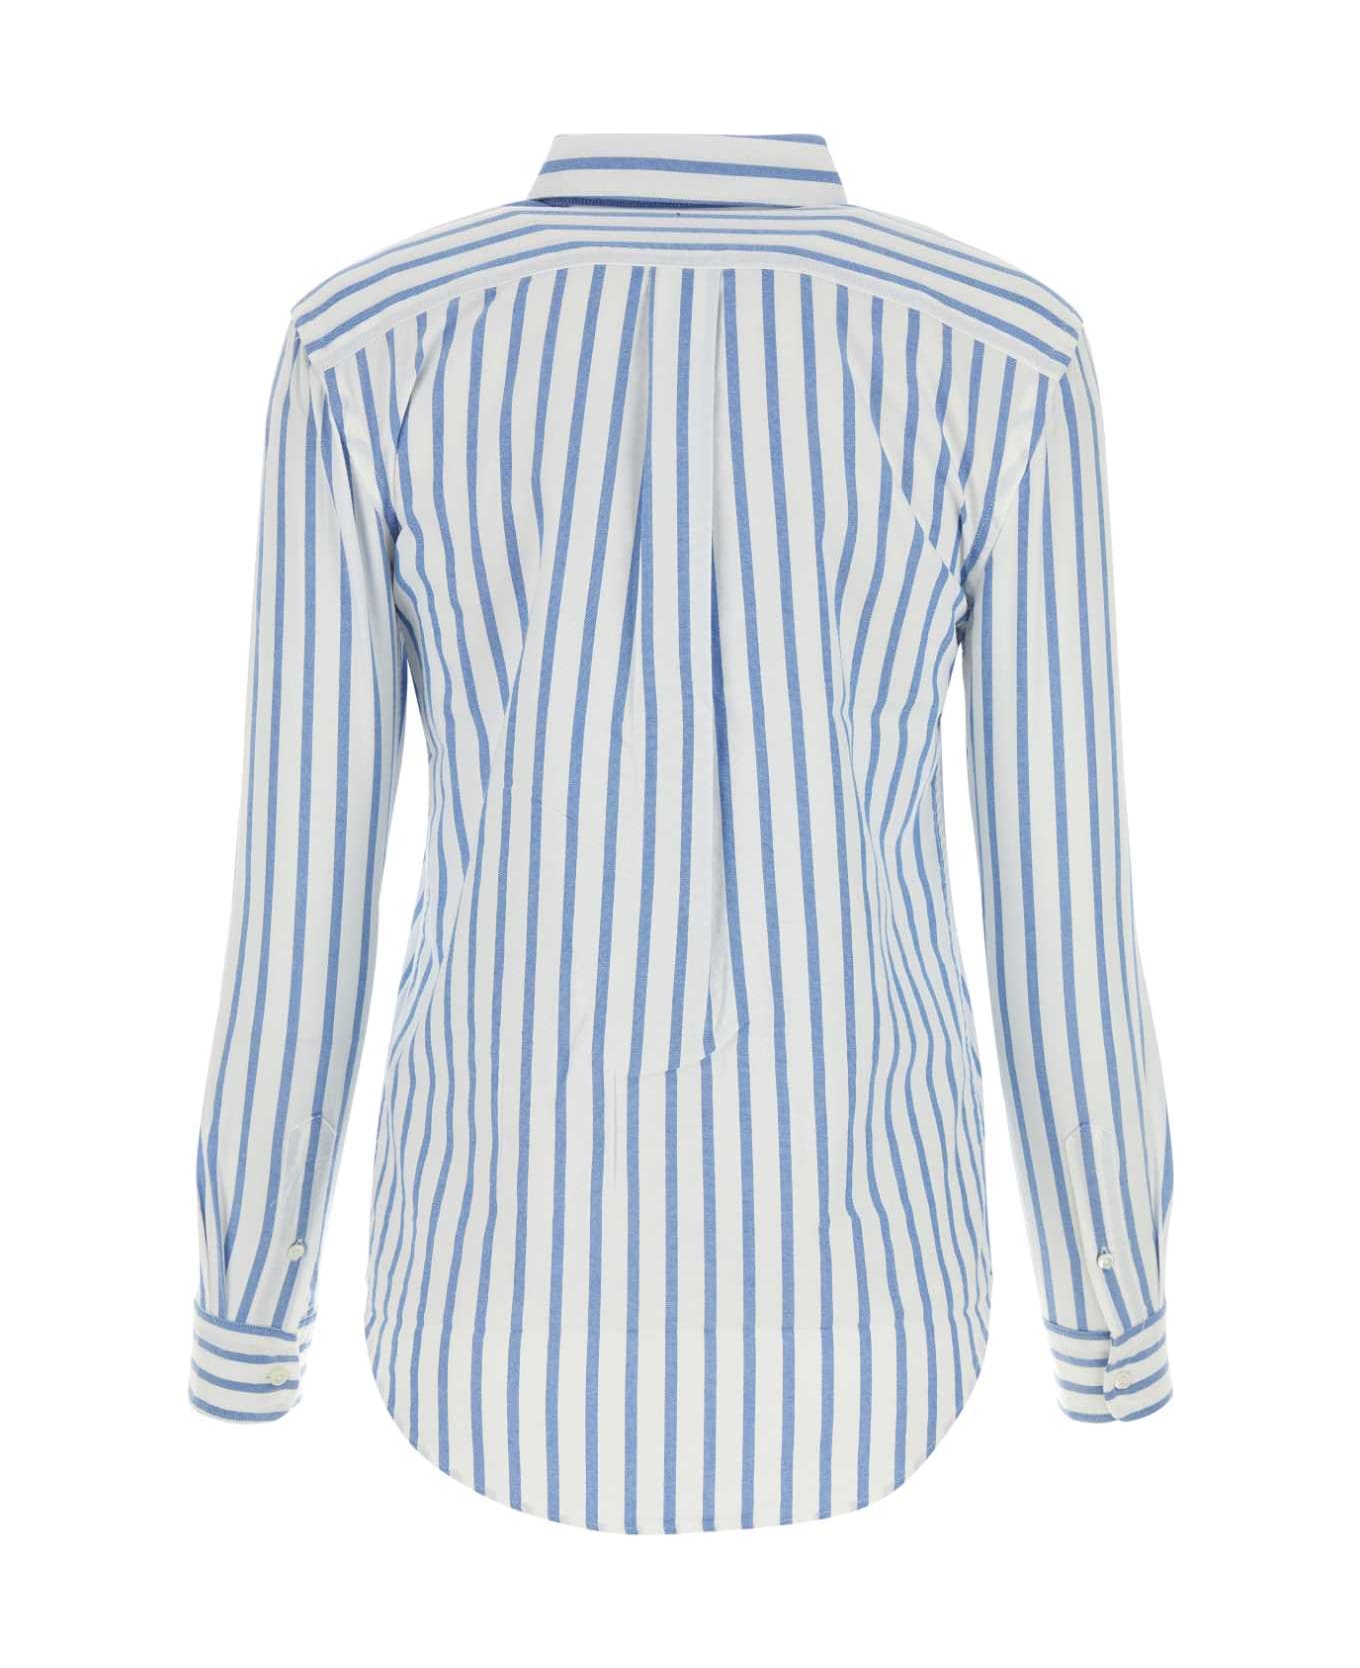 Polo Ralph Lauren Embroidered Oxford Shirt - 1693BWHITELAKEBLUESTRIPE